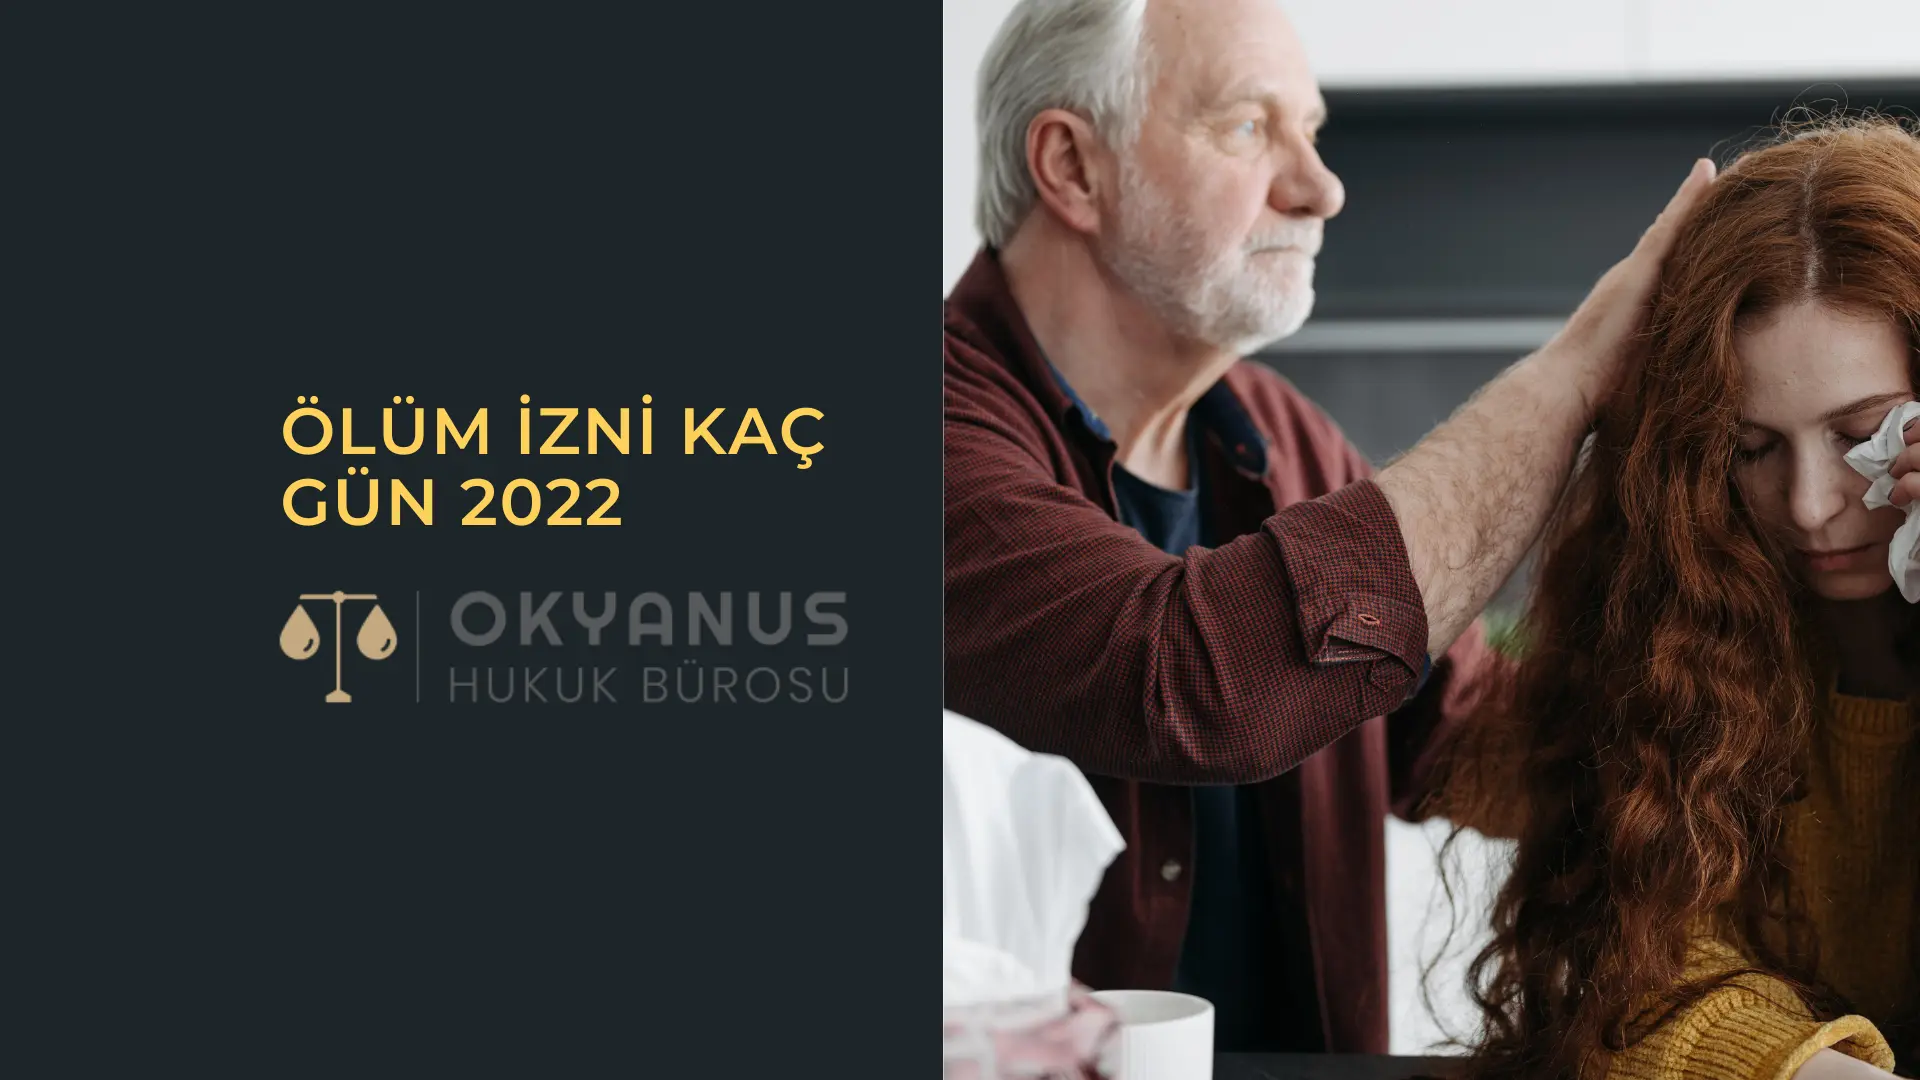 Olum-Izni-Kac-Gun-2022